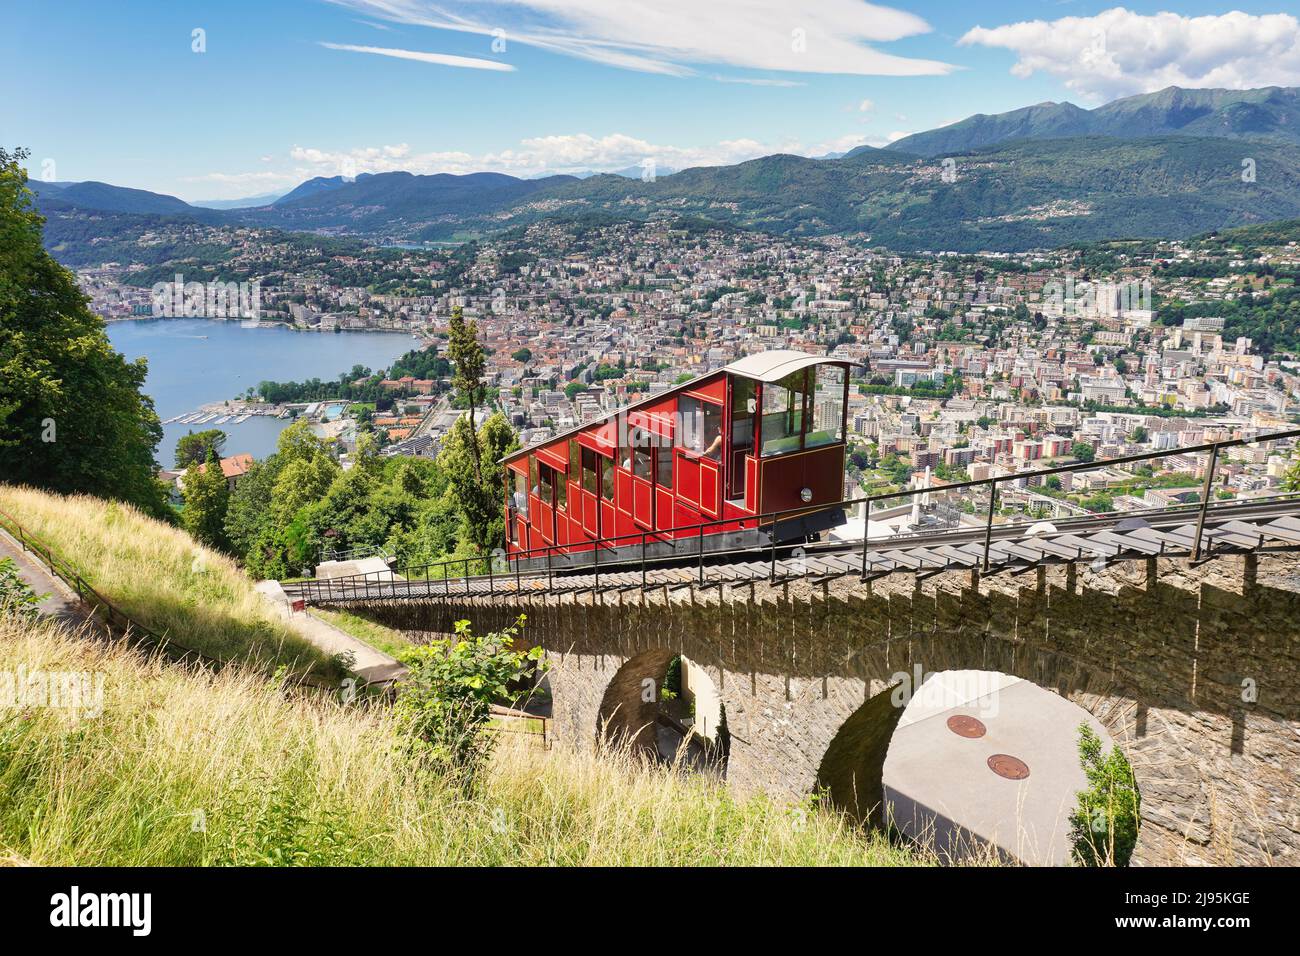 Lugano, cantón de Ticino, Suiza. Funicular Monte Brè. Transporte público en teleférico con vistas panorámicas a la ciudad. Foto de stock